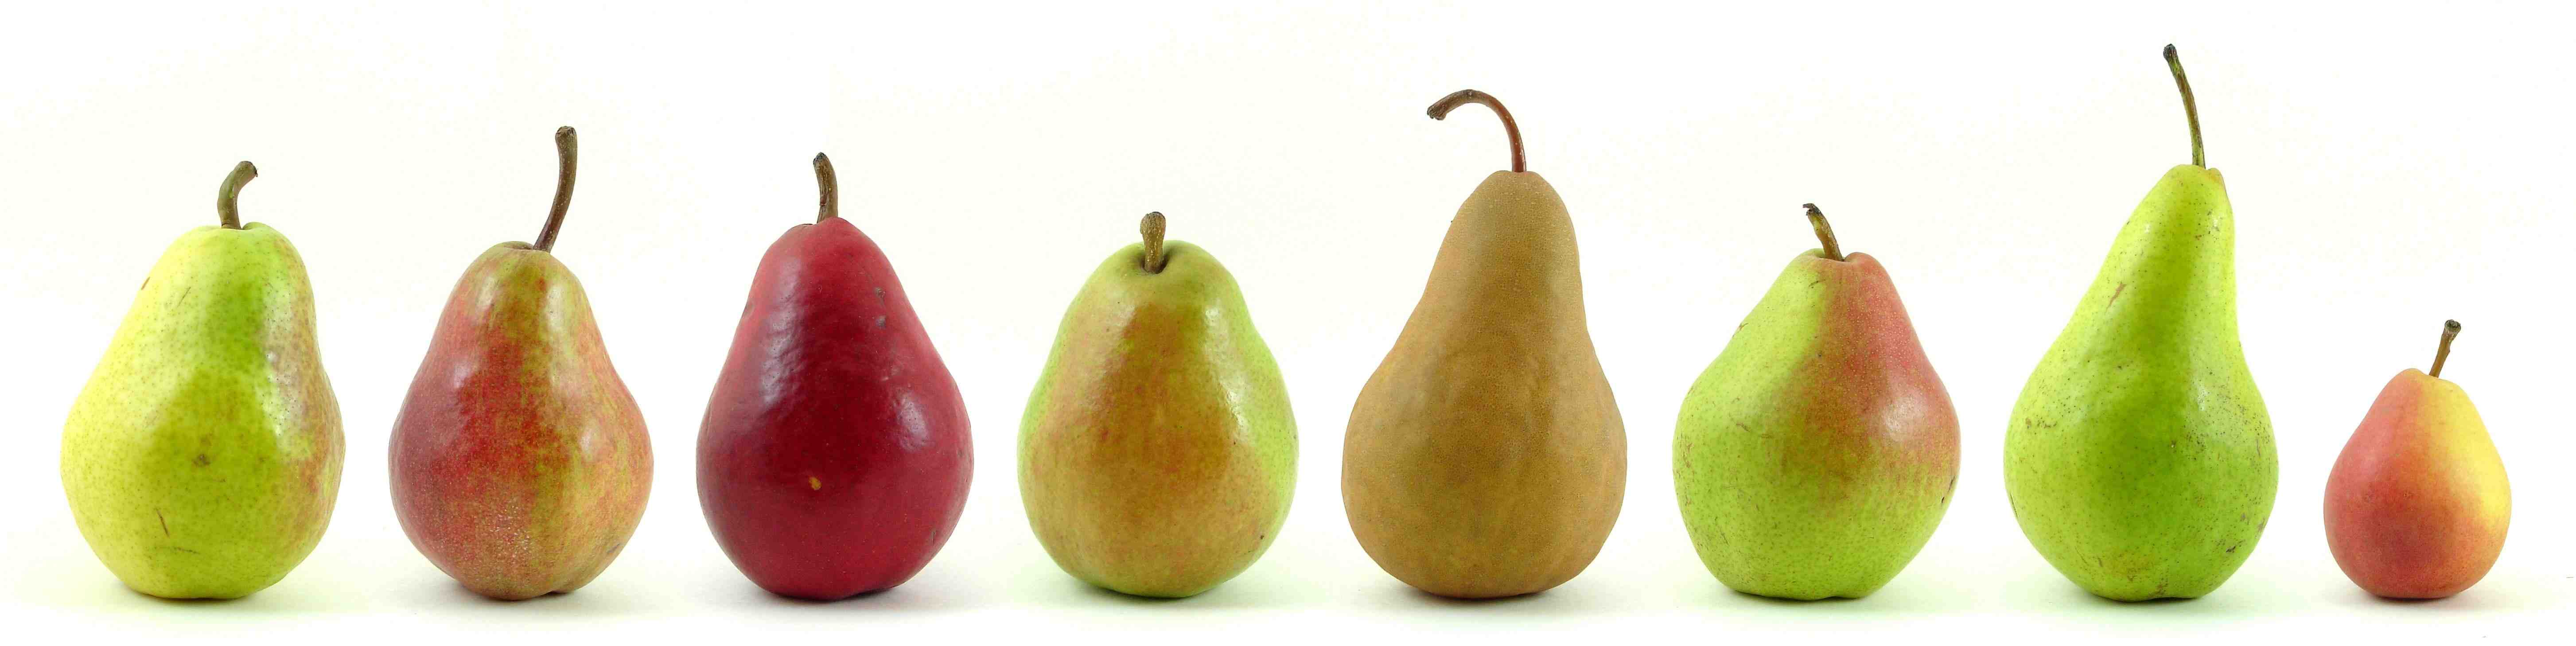 Eight varieties of pears